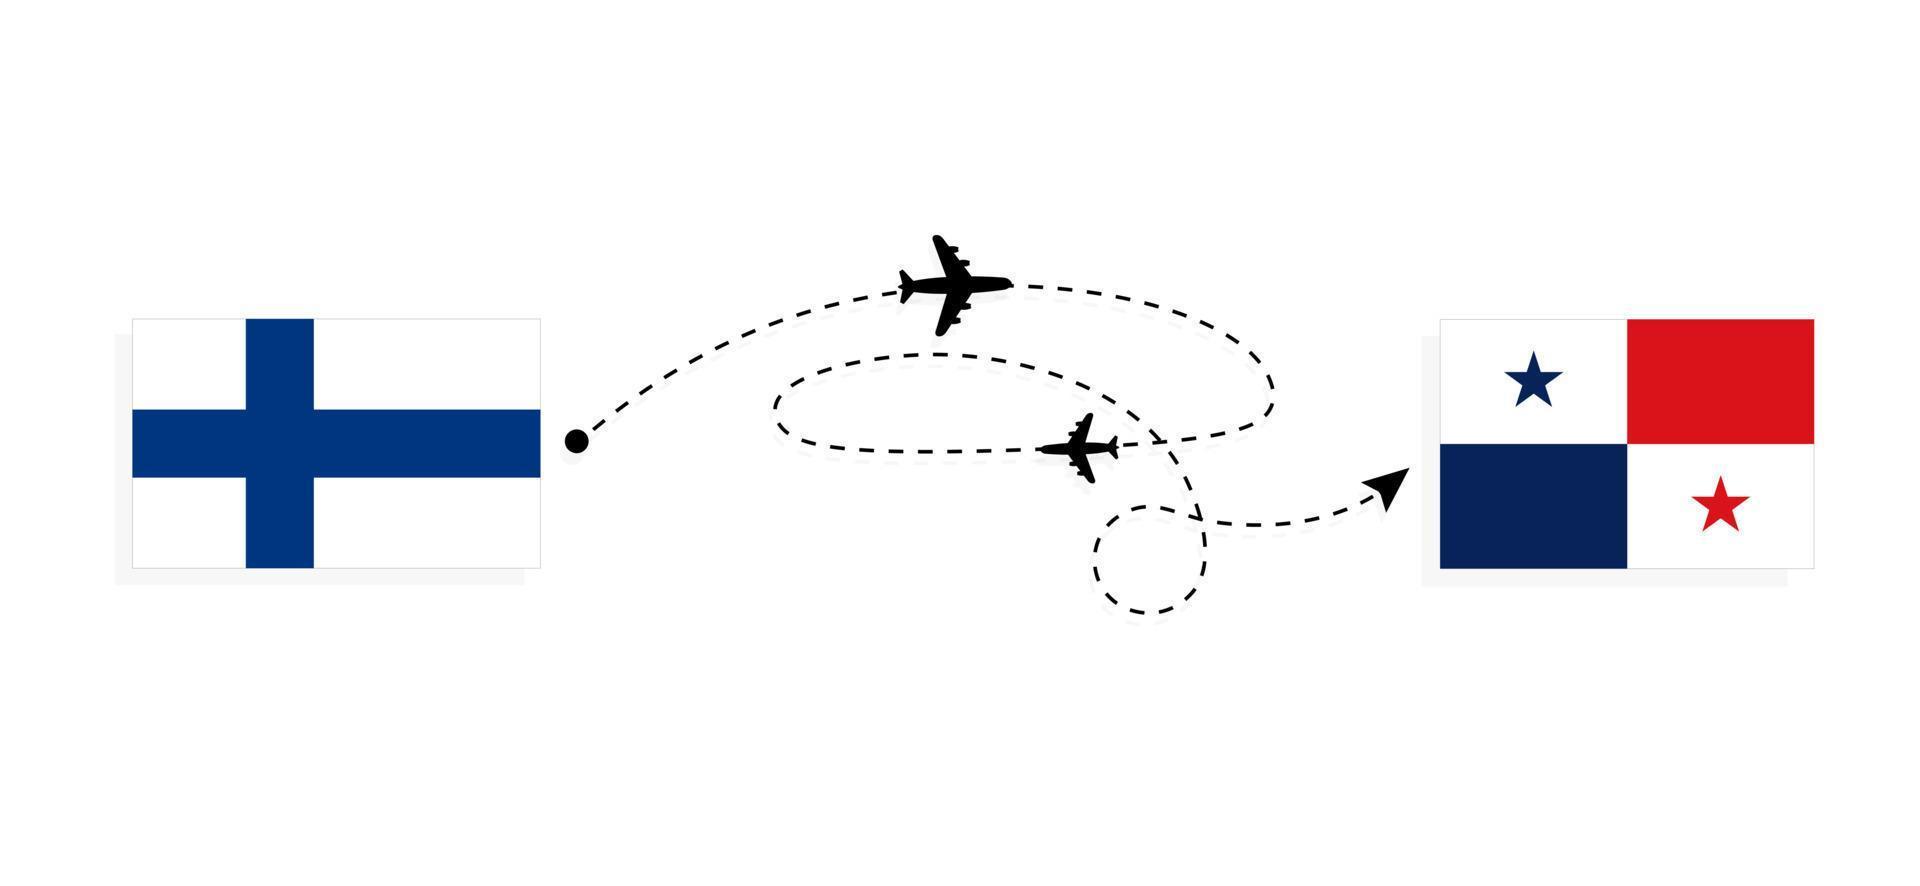 vol et voyage de la finlande au panama par concept de voyage en avion de passagers vecteur